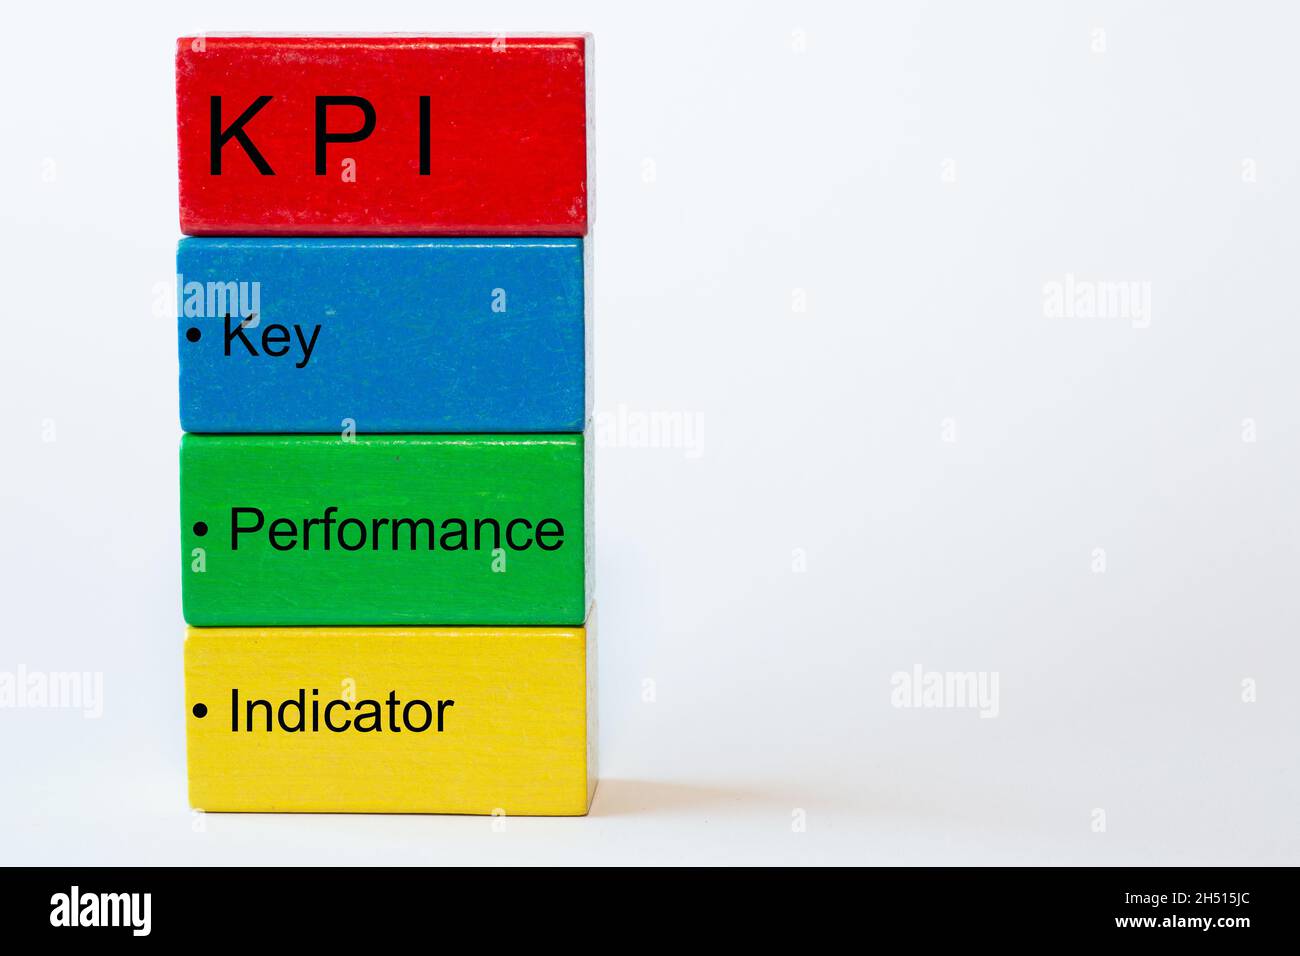 Blocs colorés avec les mots clé, performance, indicateur et en haut un bloc rouge avec les lettres KPI.L'arrière-plan est isolé en blanc Banque D'Images